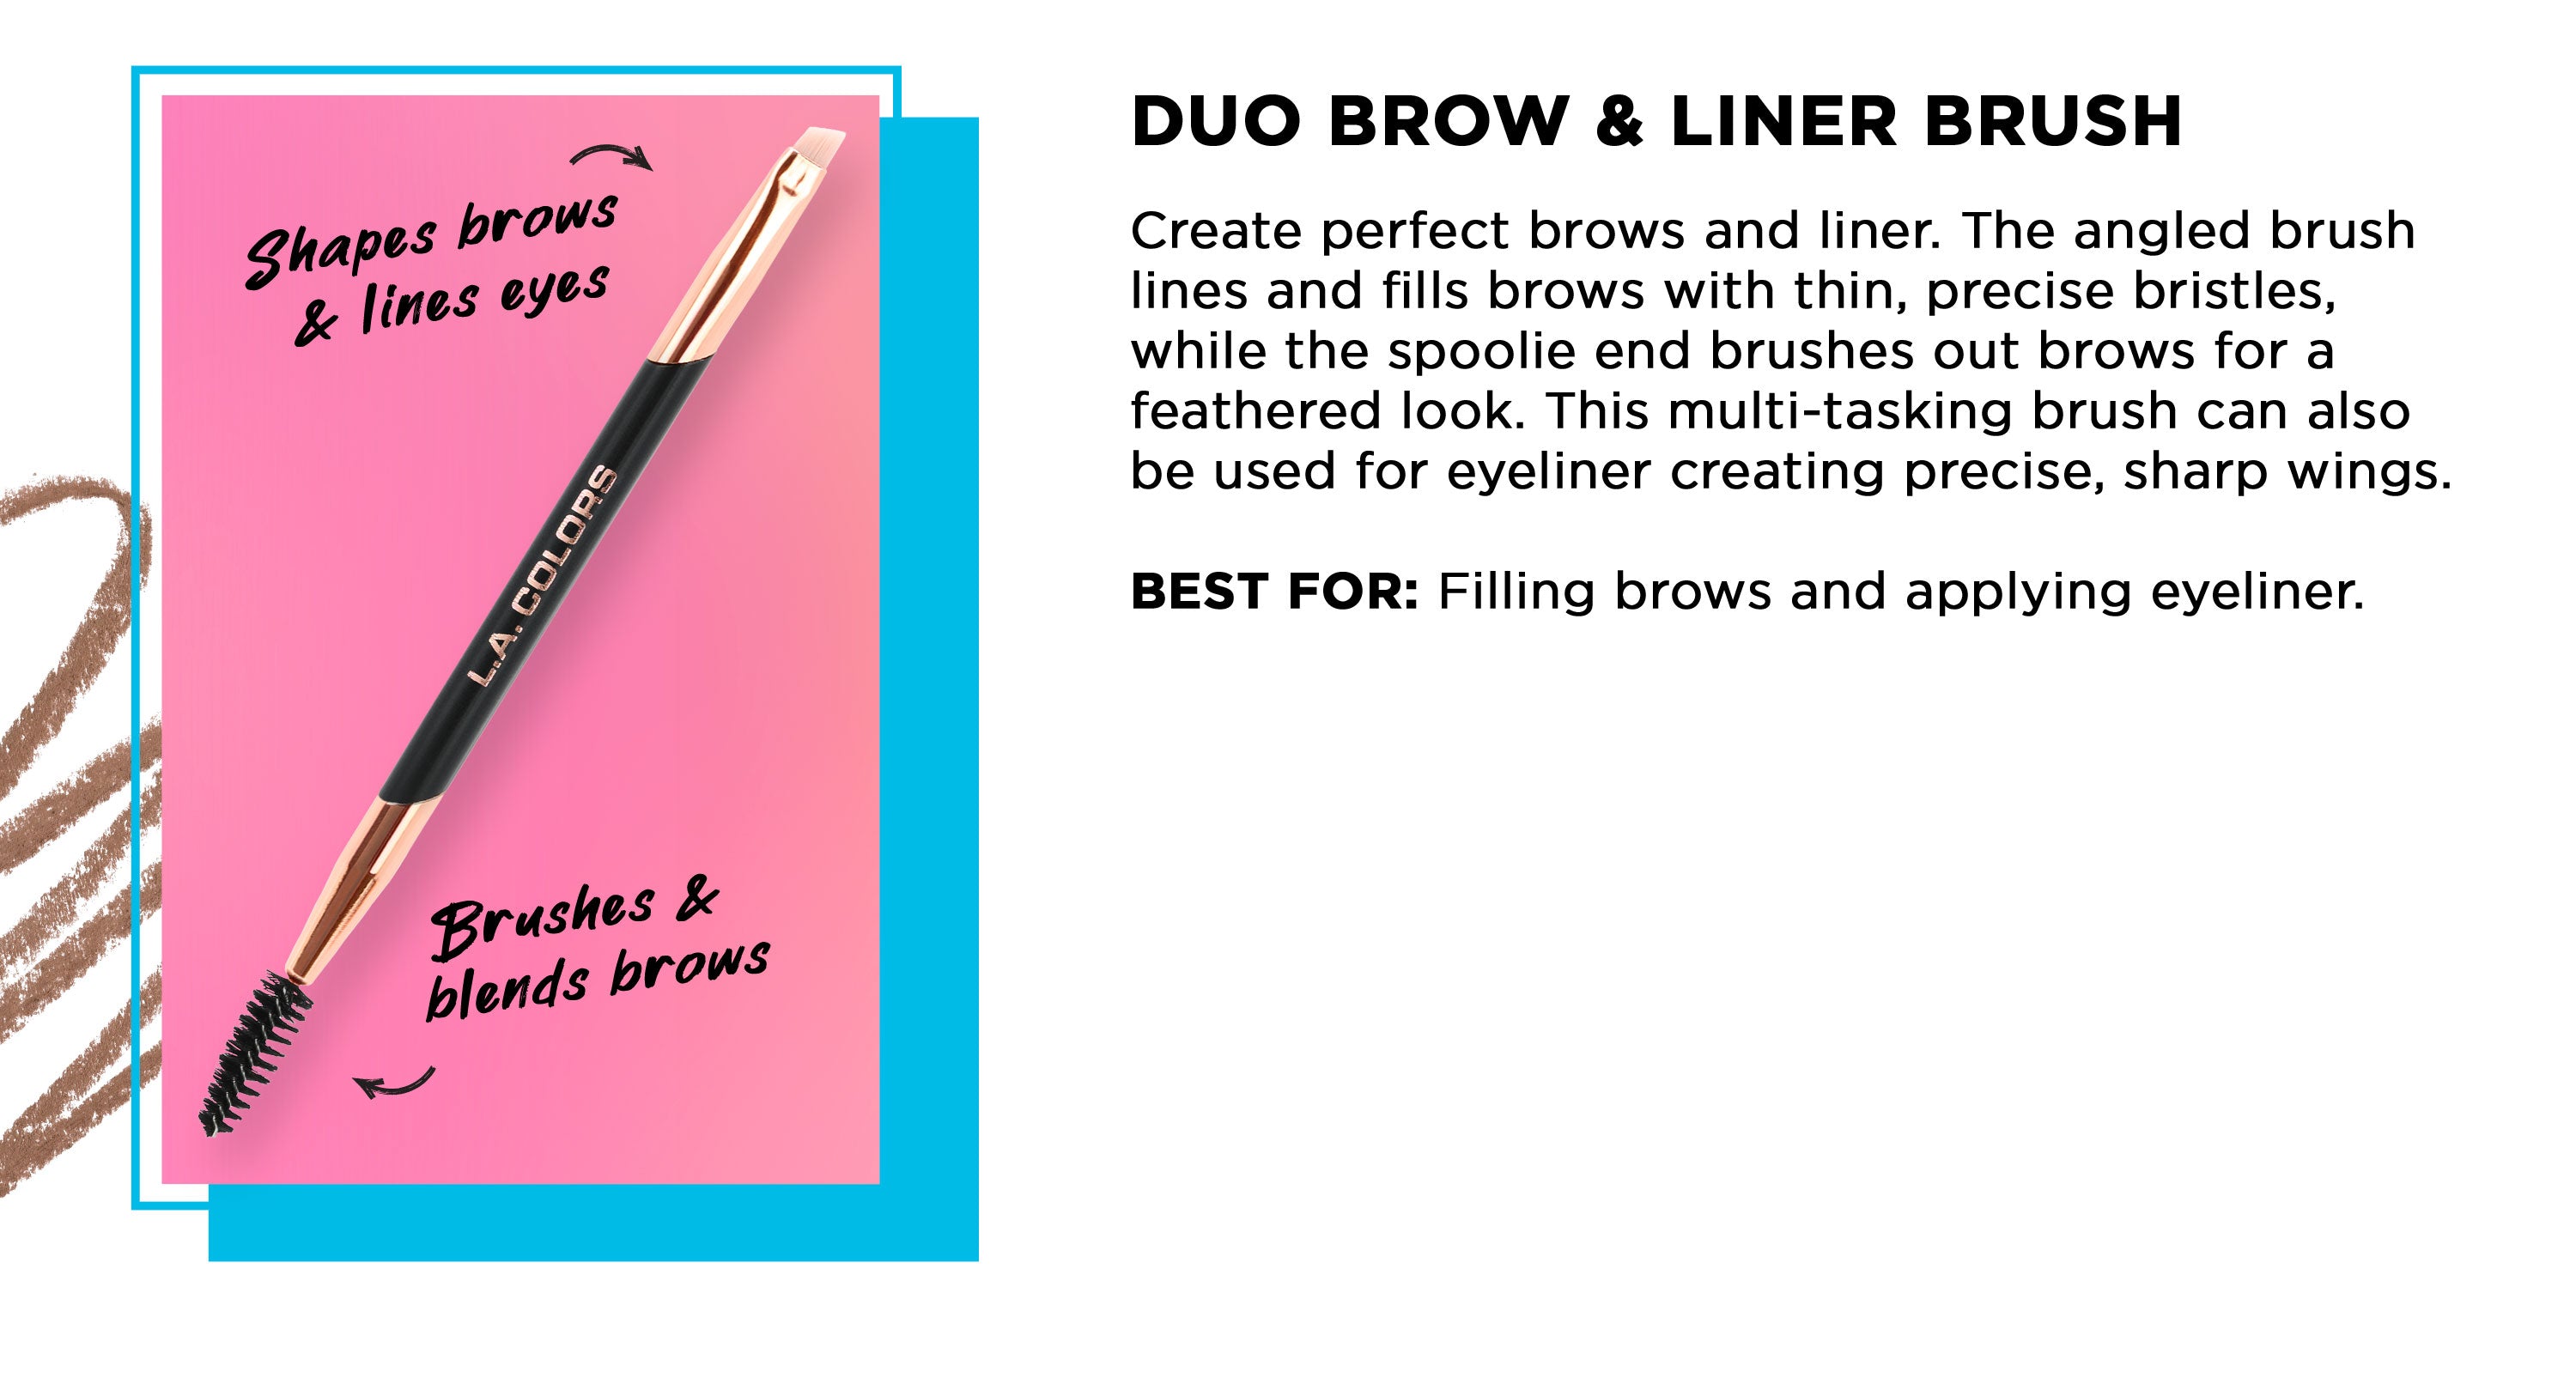 Duo Brow & Liner Brush